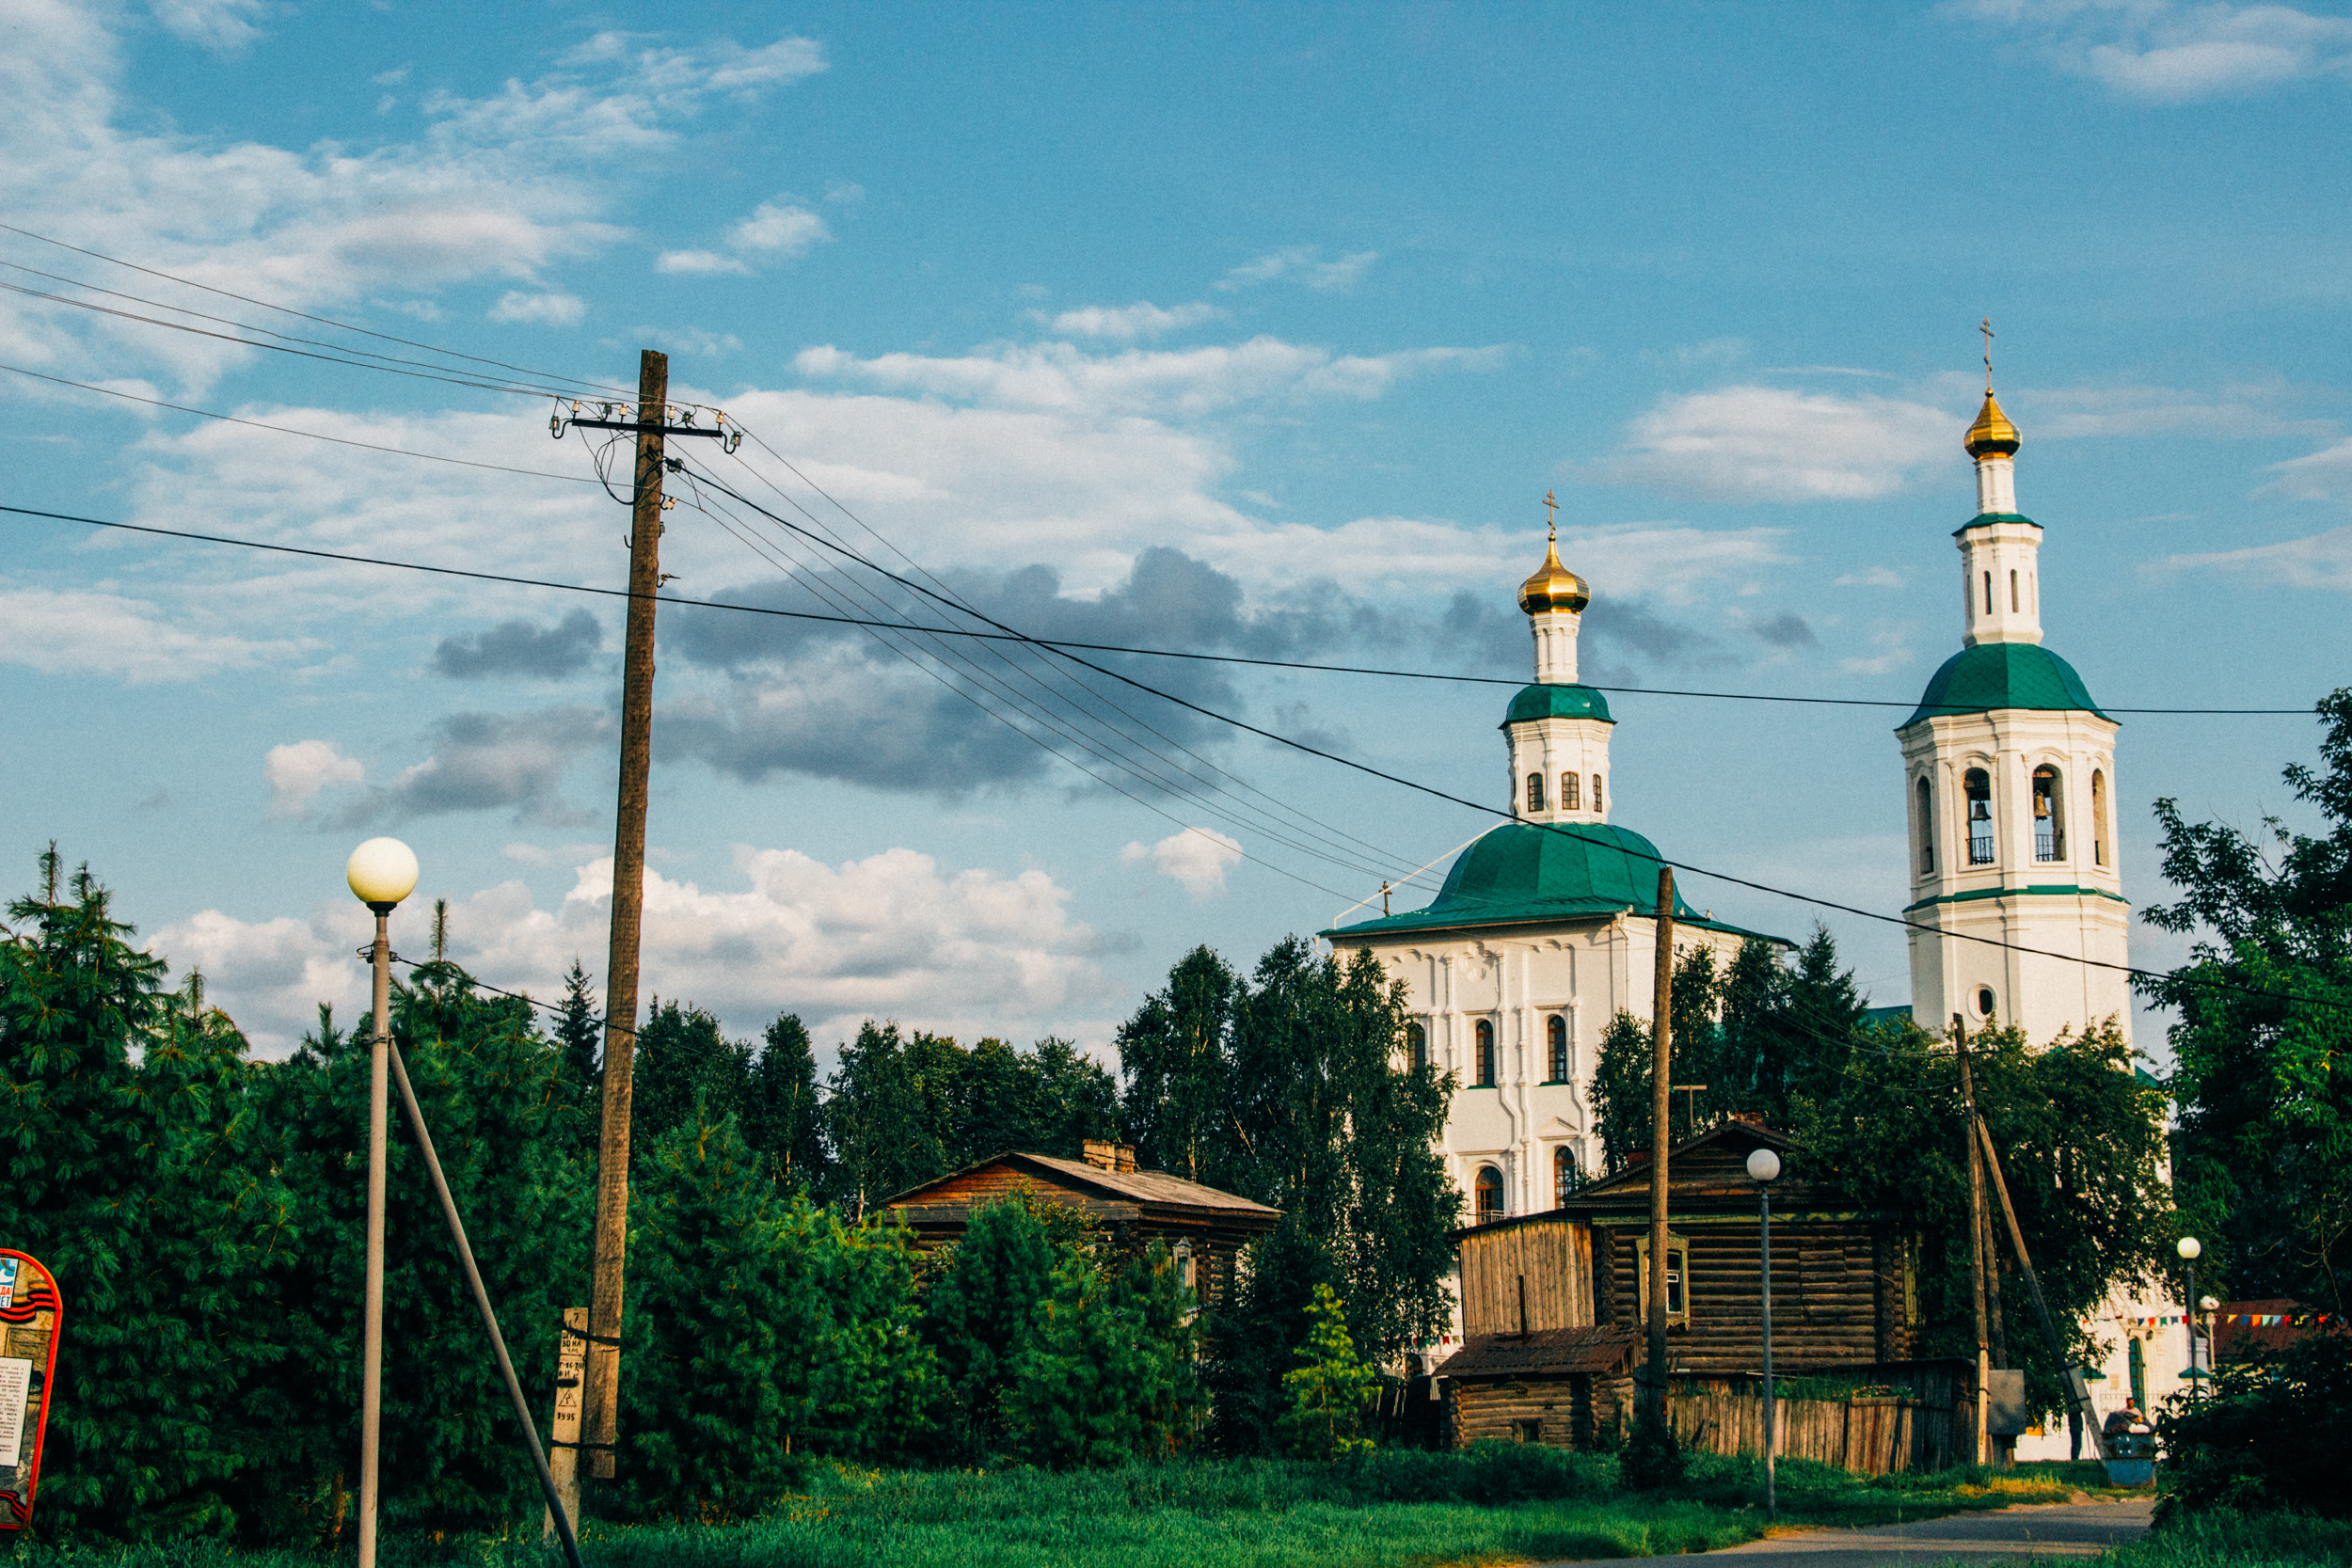 Куда съездить на выходные в Омской области: отправляемся в самый старый город региона